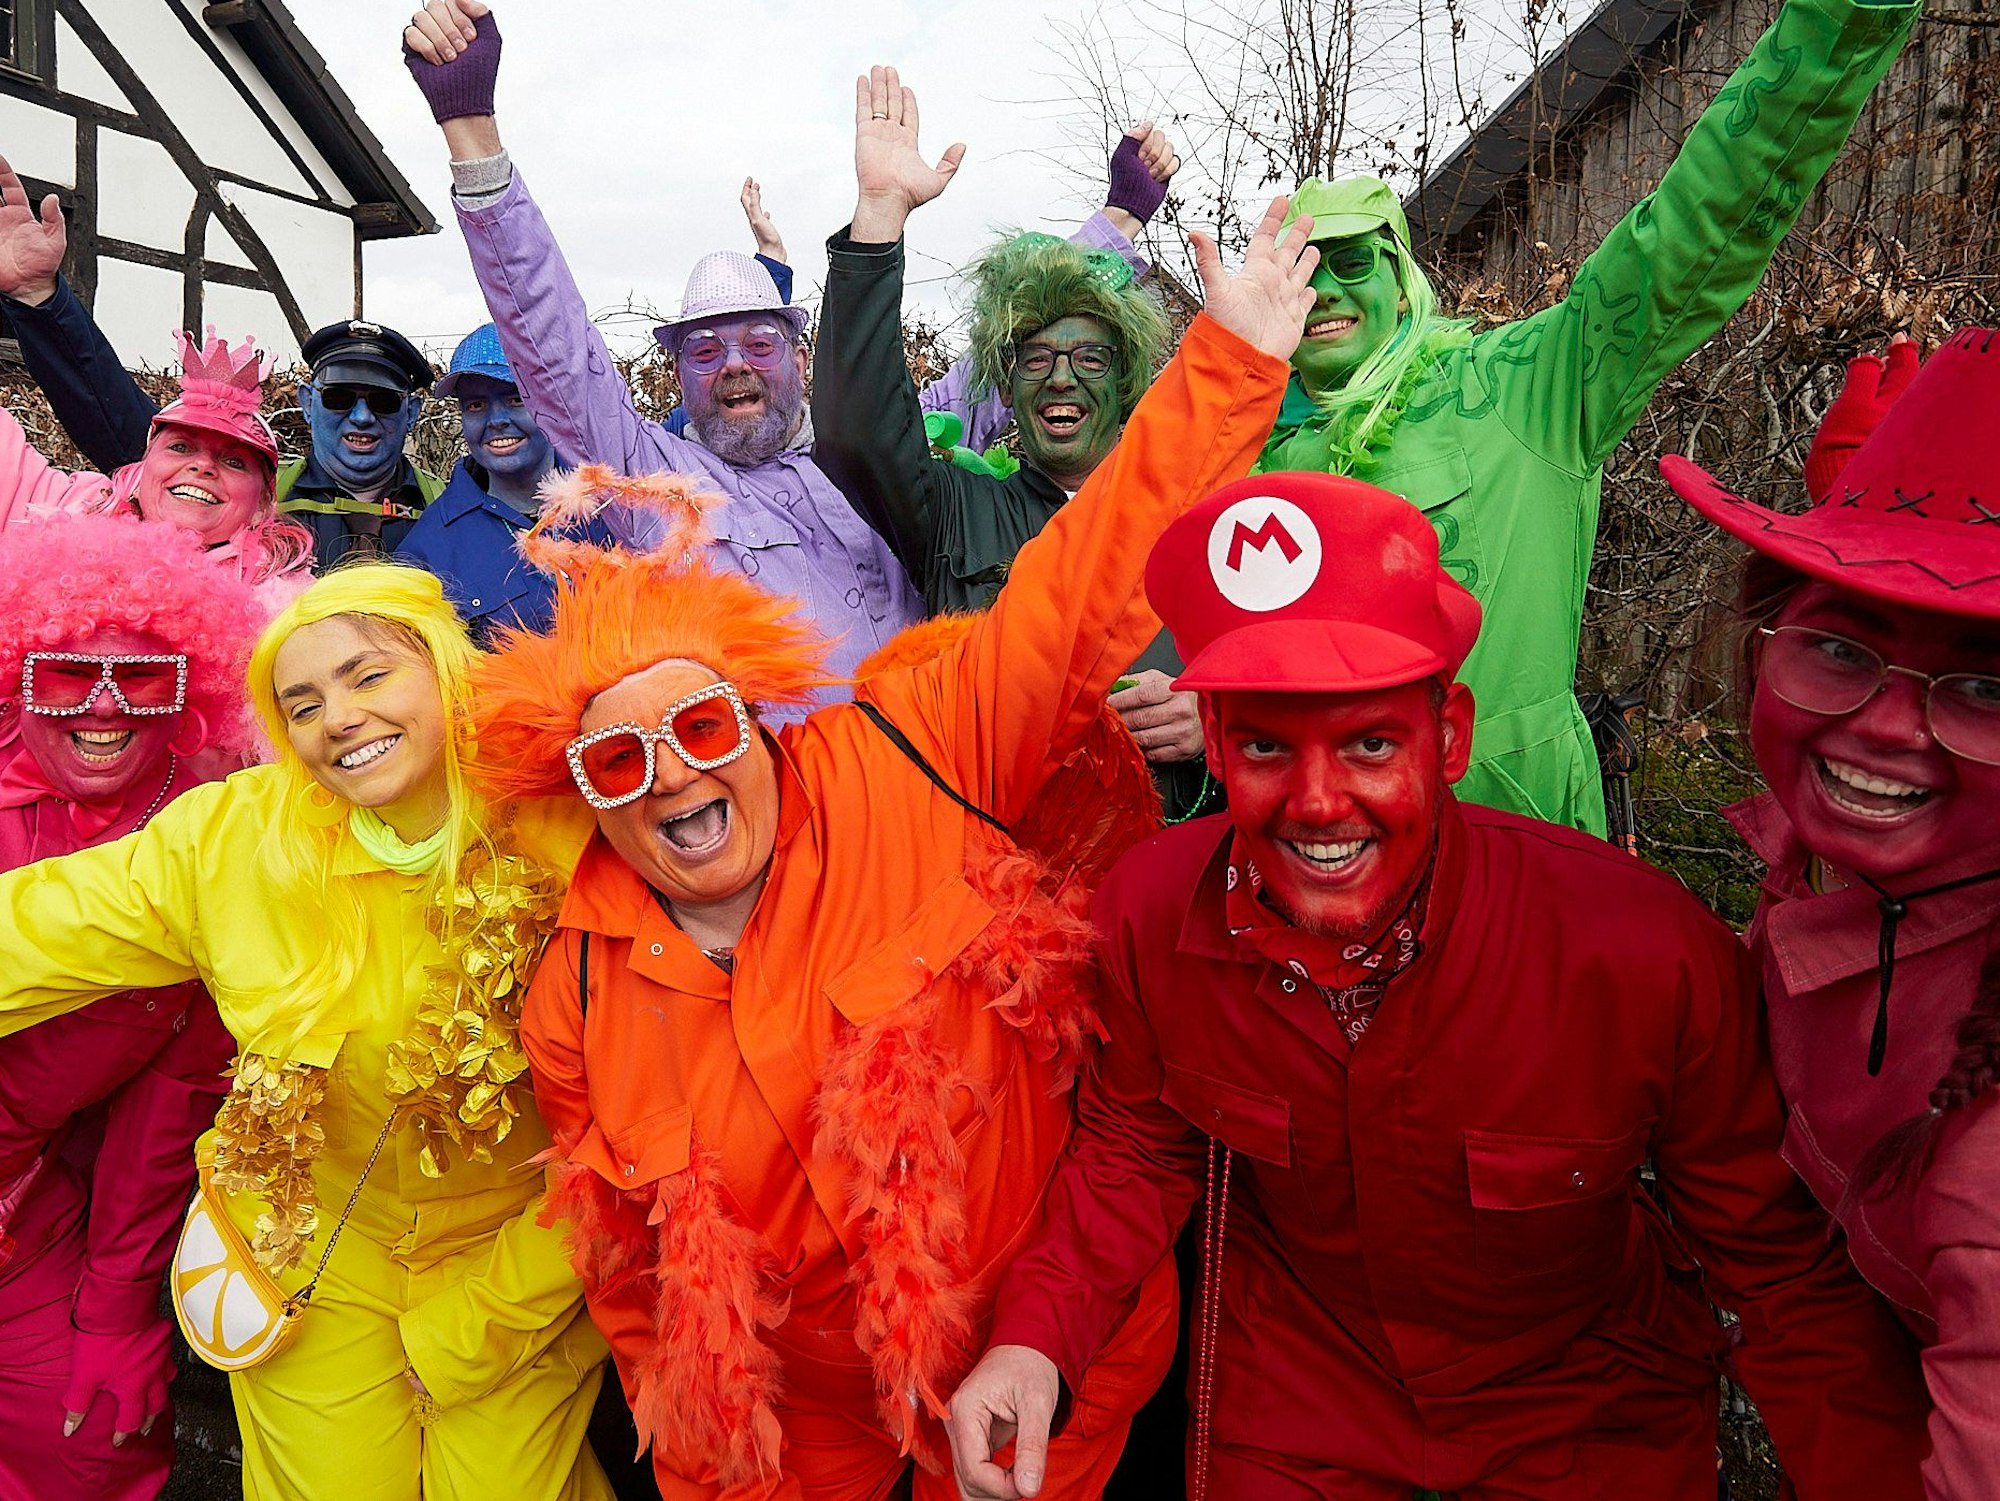 Bunt kostümierte Karnevalisten aus Belgien sind in Hecken zu Gast.